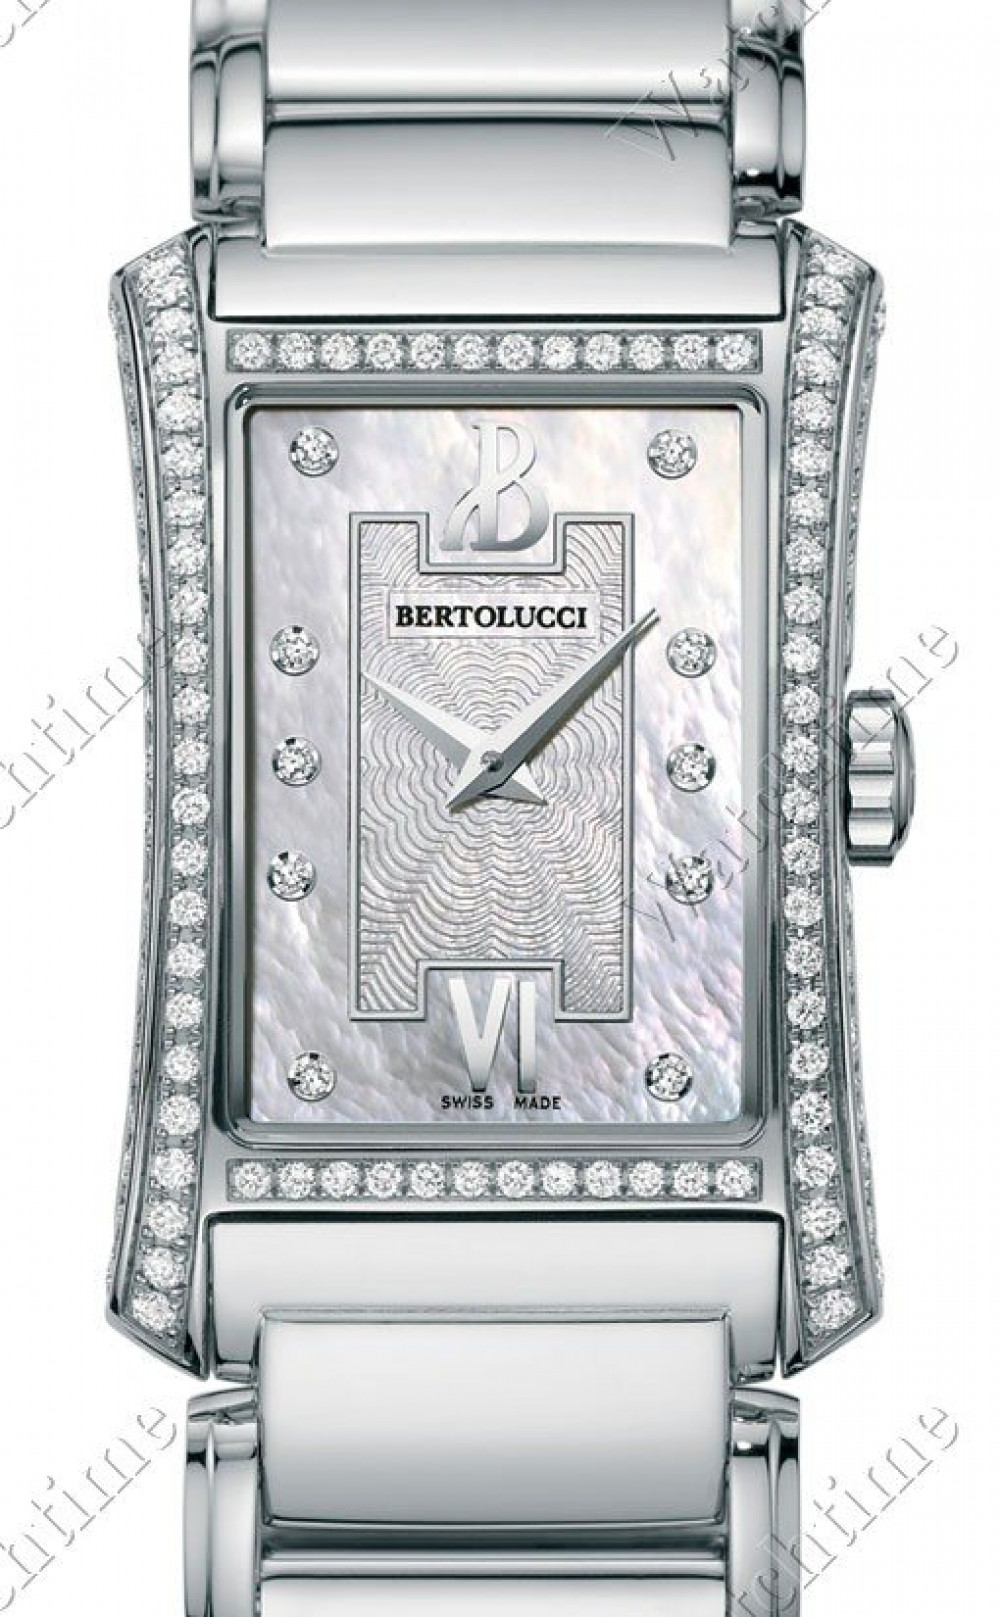 Zegarek firmy Bertolucci, model Fascino